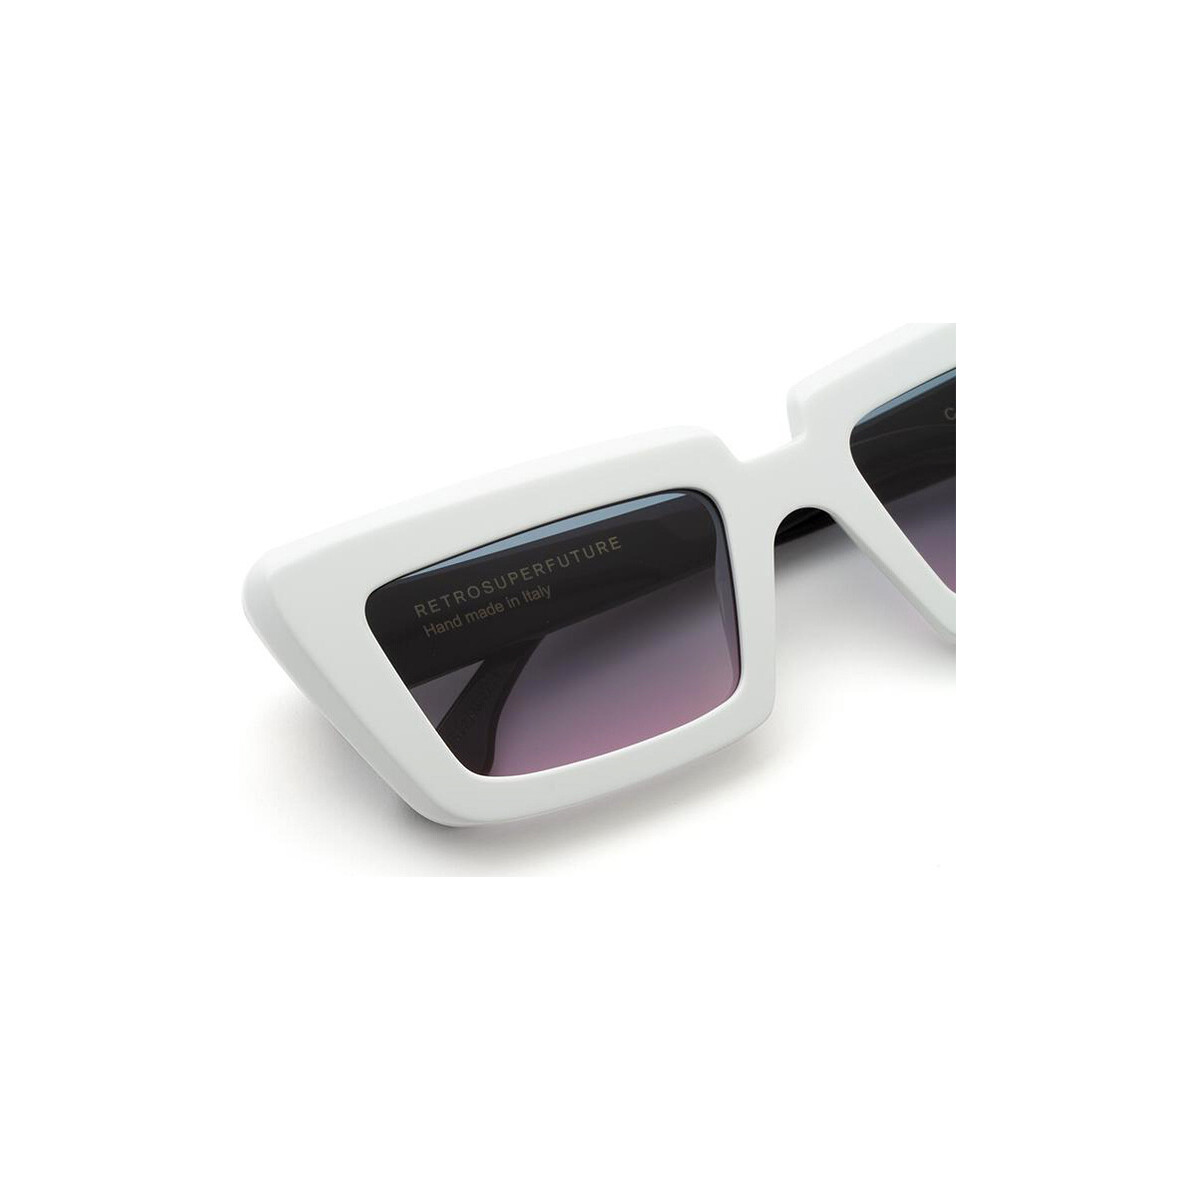 Orologi & Gioielli Occhiali da sole Retrosuperfuture ZV5 Coccodrillo Occhiali da sole, Bianco/Bl Bianco